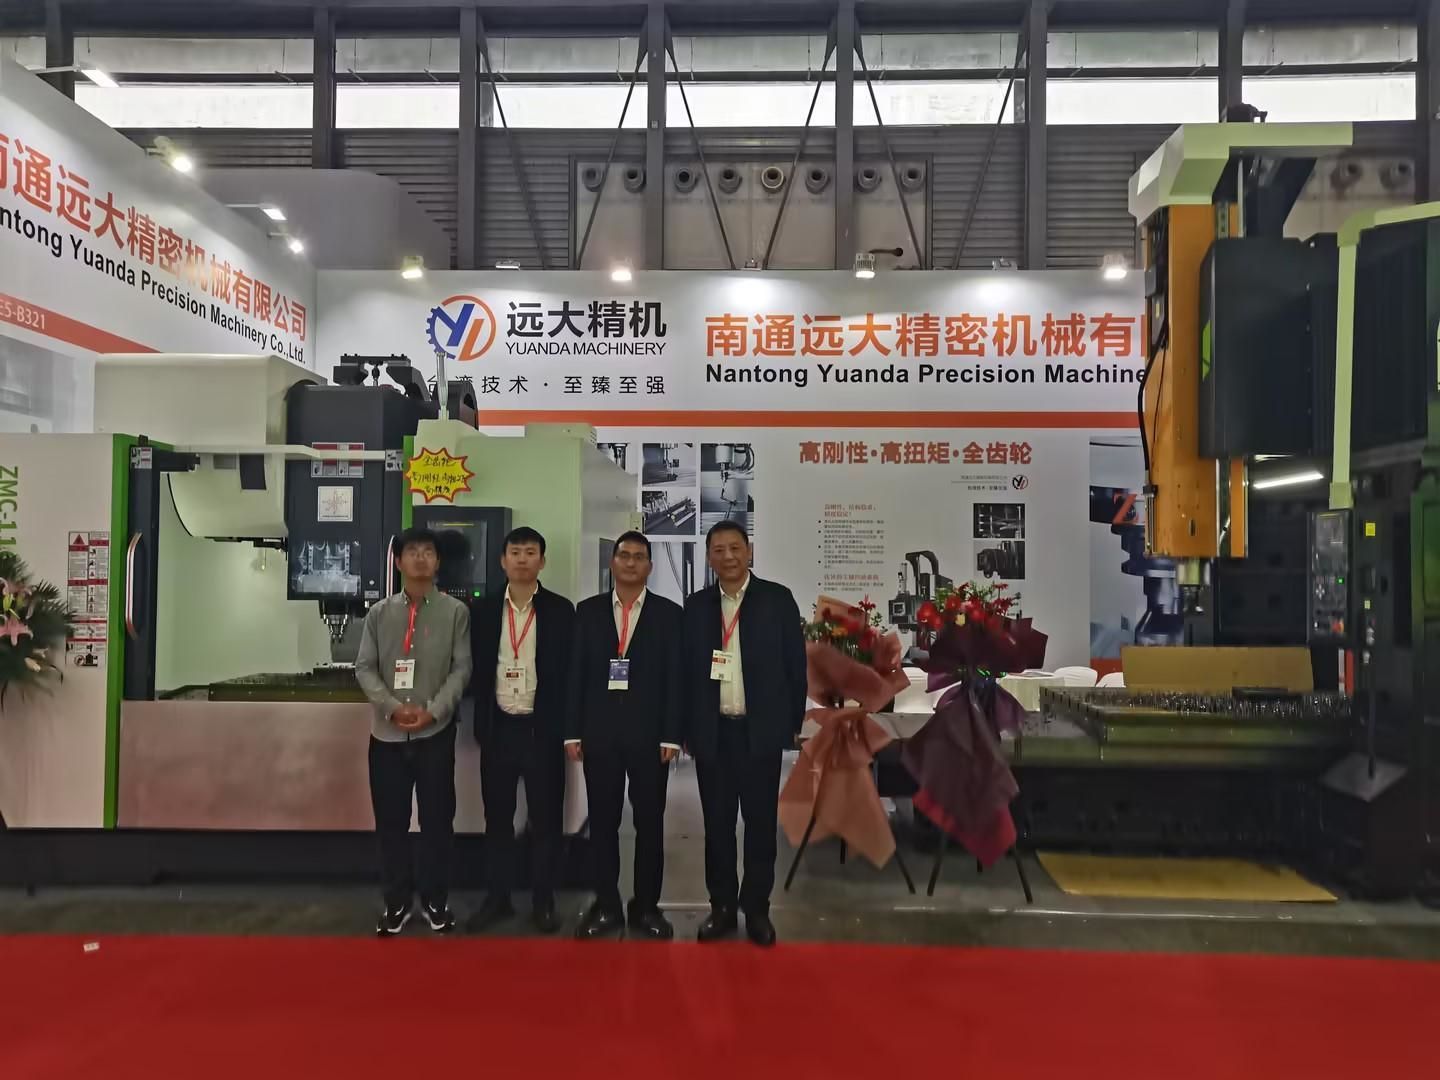 جولة في معرض أدوات آلة CNC في الصين